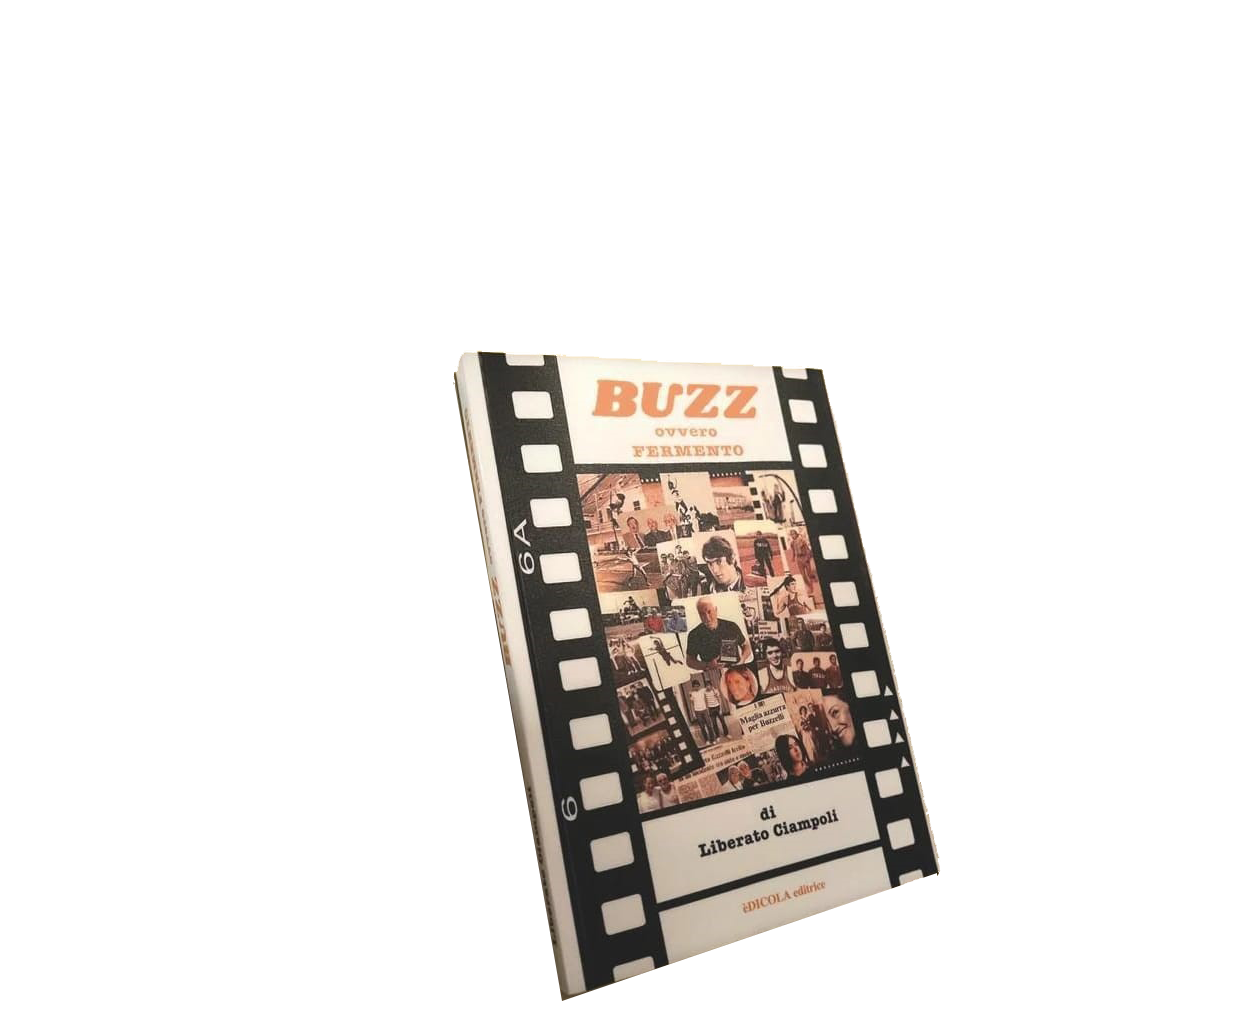 BUZZ ovvero FERMENTO.  Il nuovo libro sulla mia storia scritto da Liberato Ciampoli.